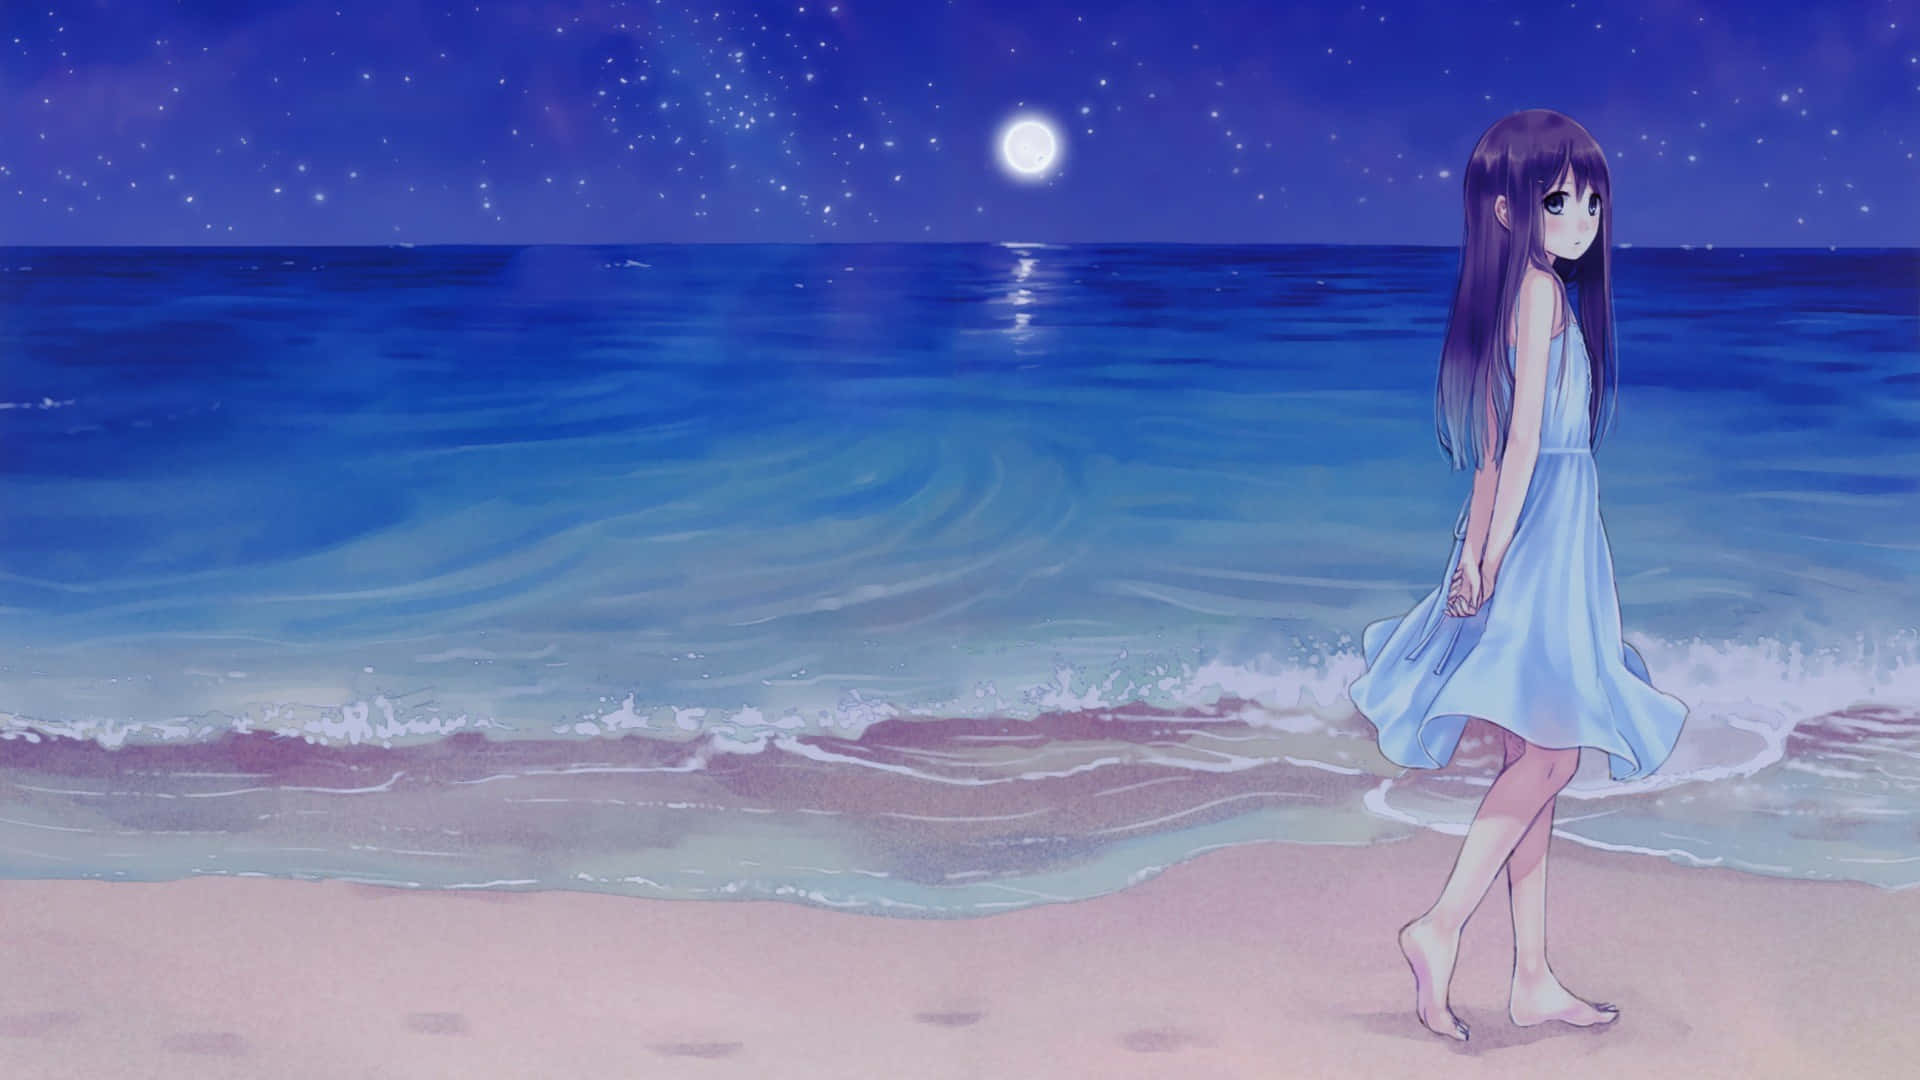 Kazuharukinas 'girl On Beach' Anime: Tjej På Stranden'anime Av Kazuharu Kina. Wallpaper